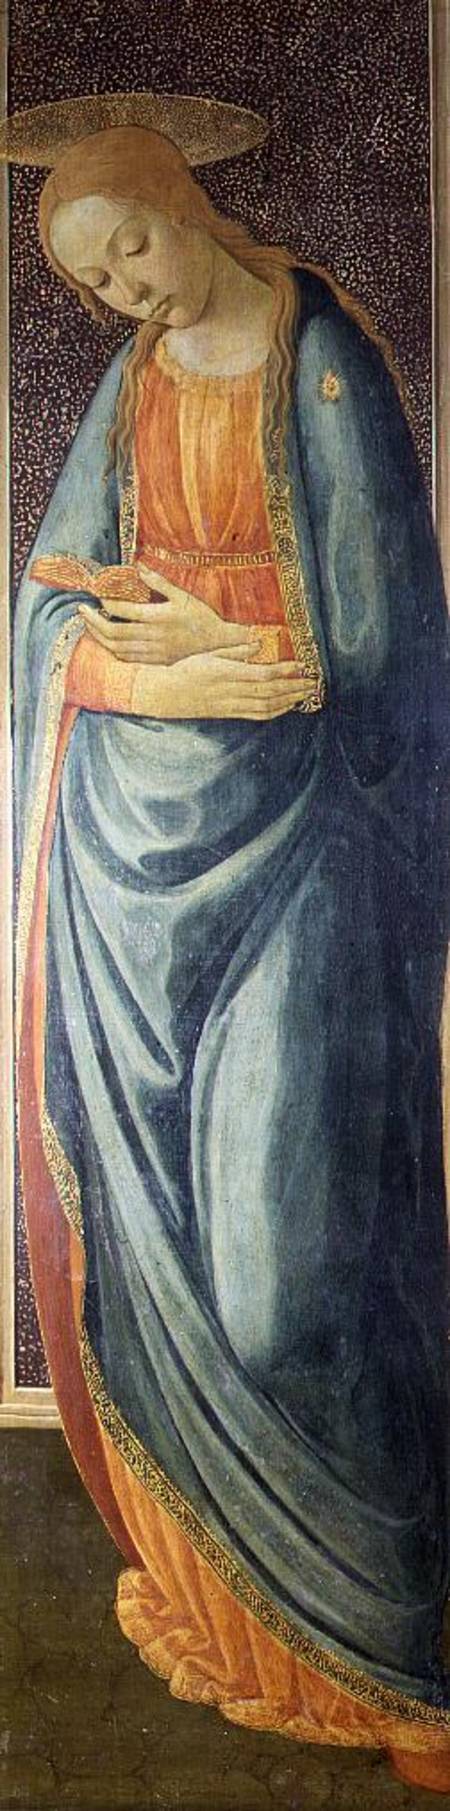 Virgin Mary von Jacopo del Sellaio